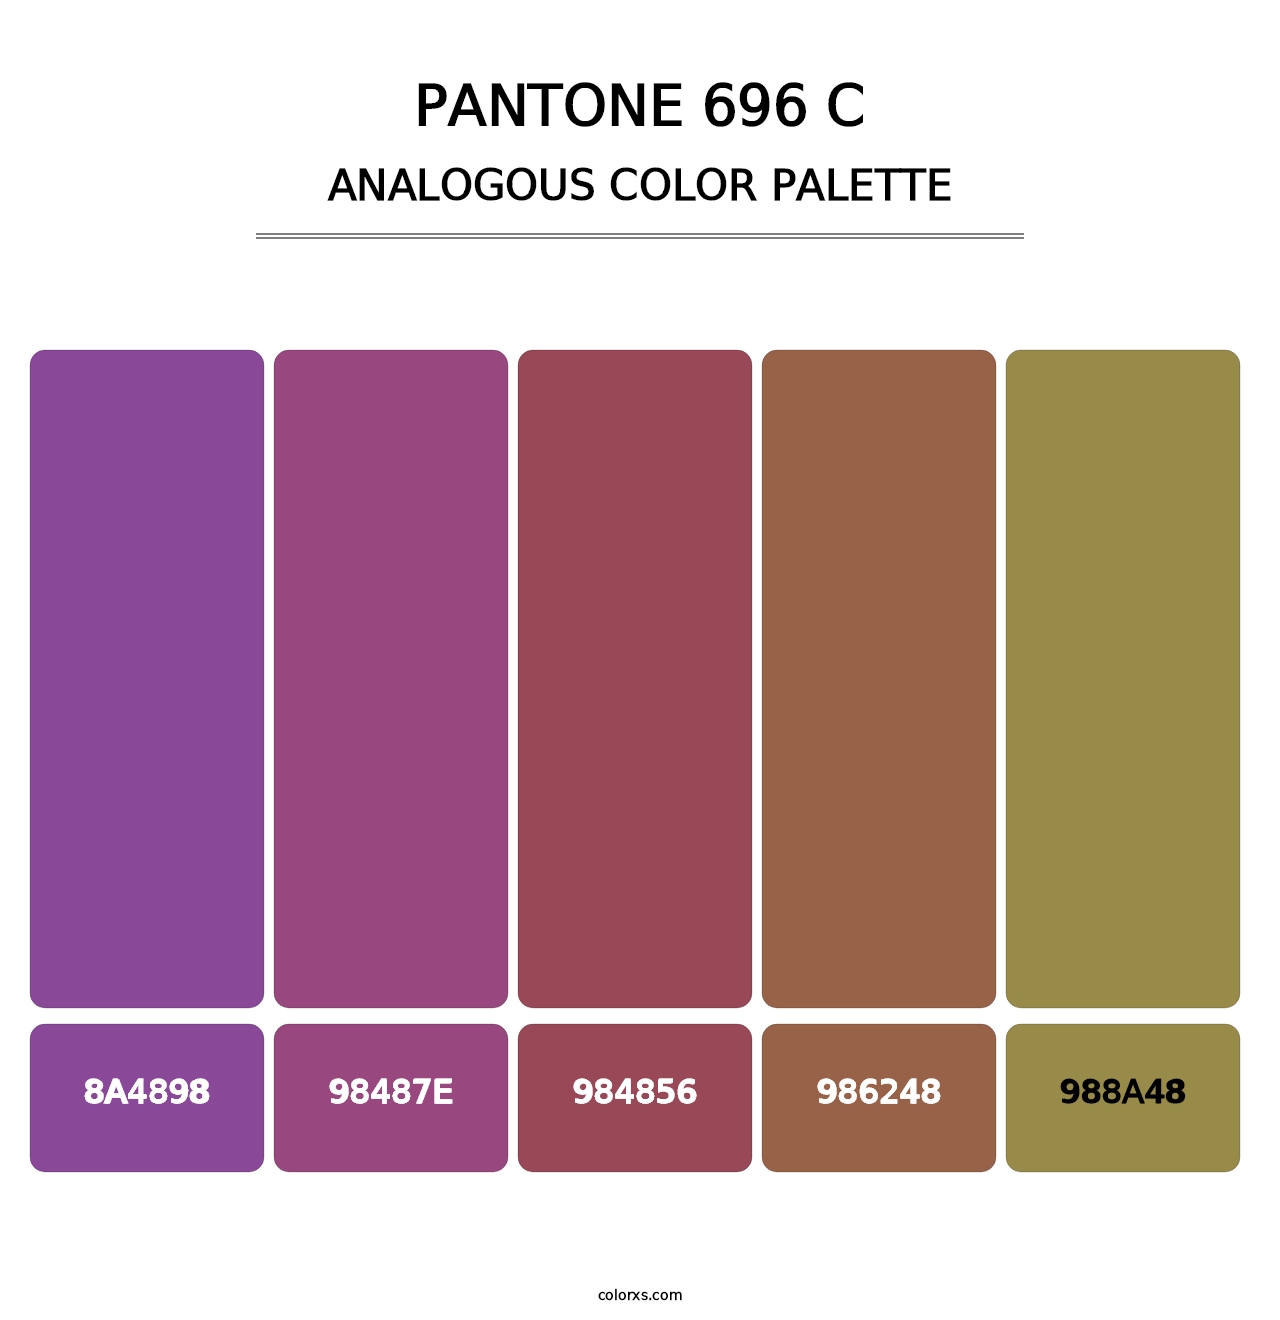 PANTONE 696 C - Analogous Color Palette